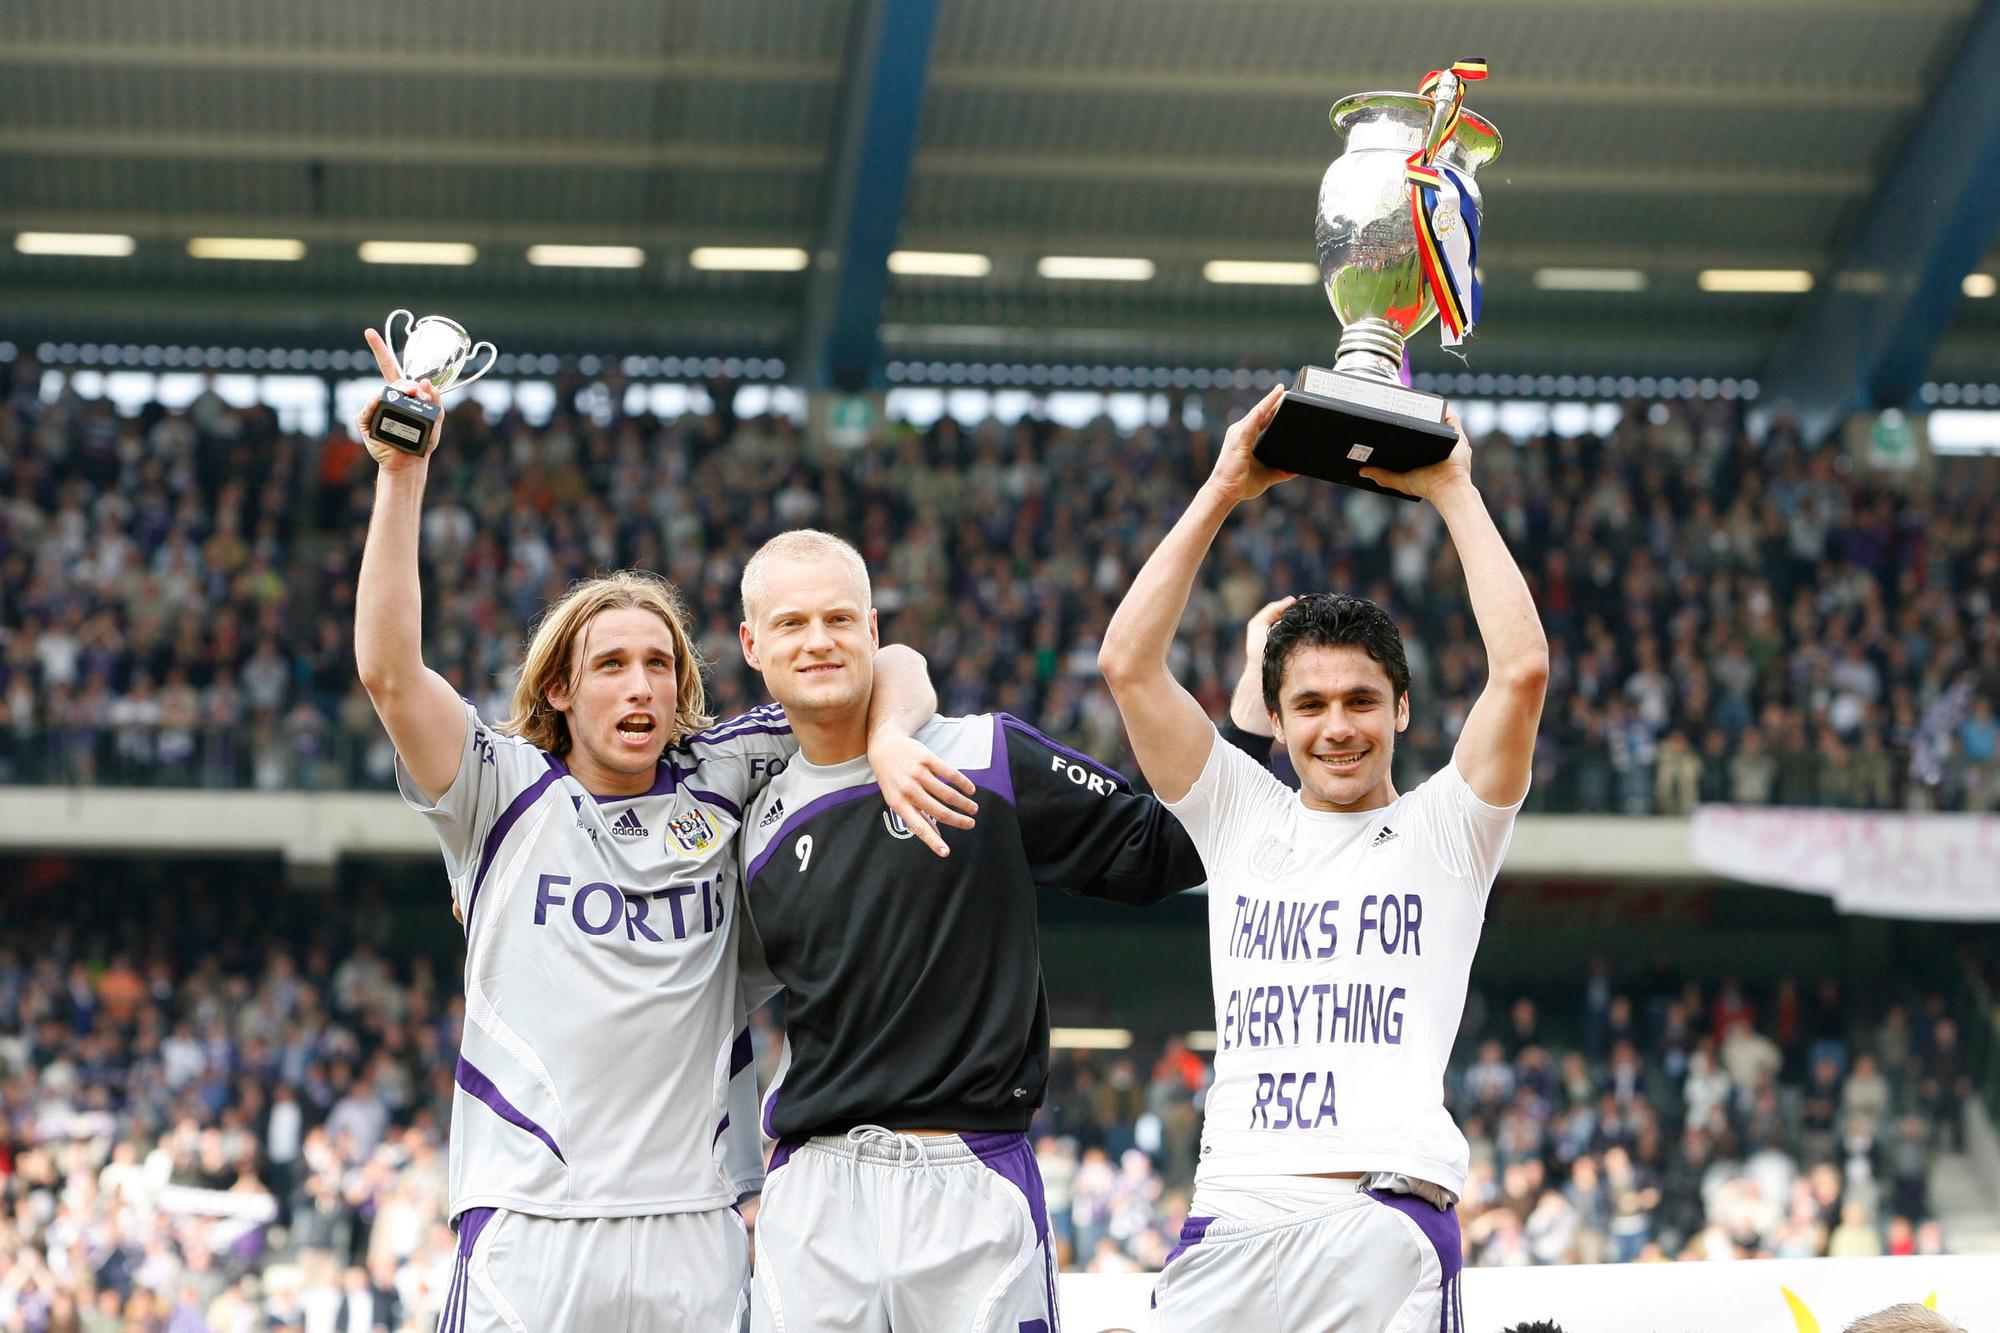 Ahmed Hassan won in 2008 de beker met Anderlecht. Ook op de foto: Lucas Biglia en Olivier Deschacht.